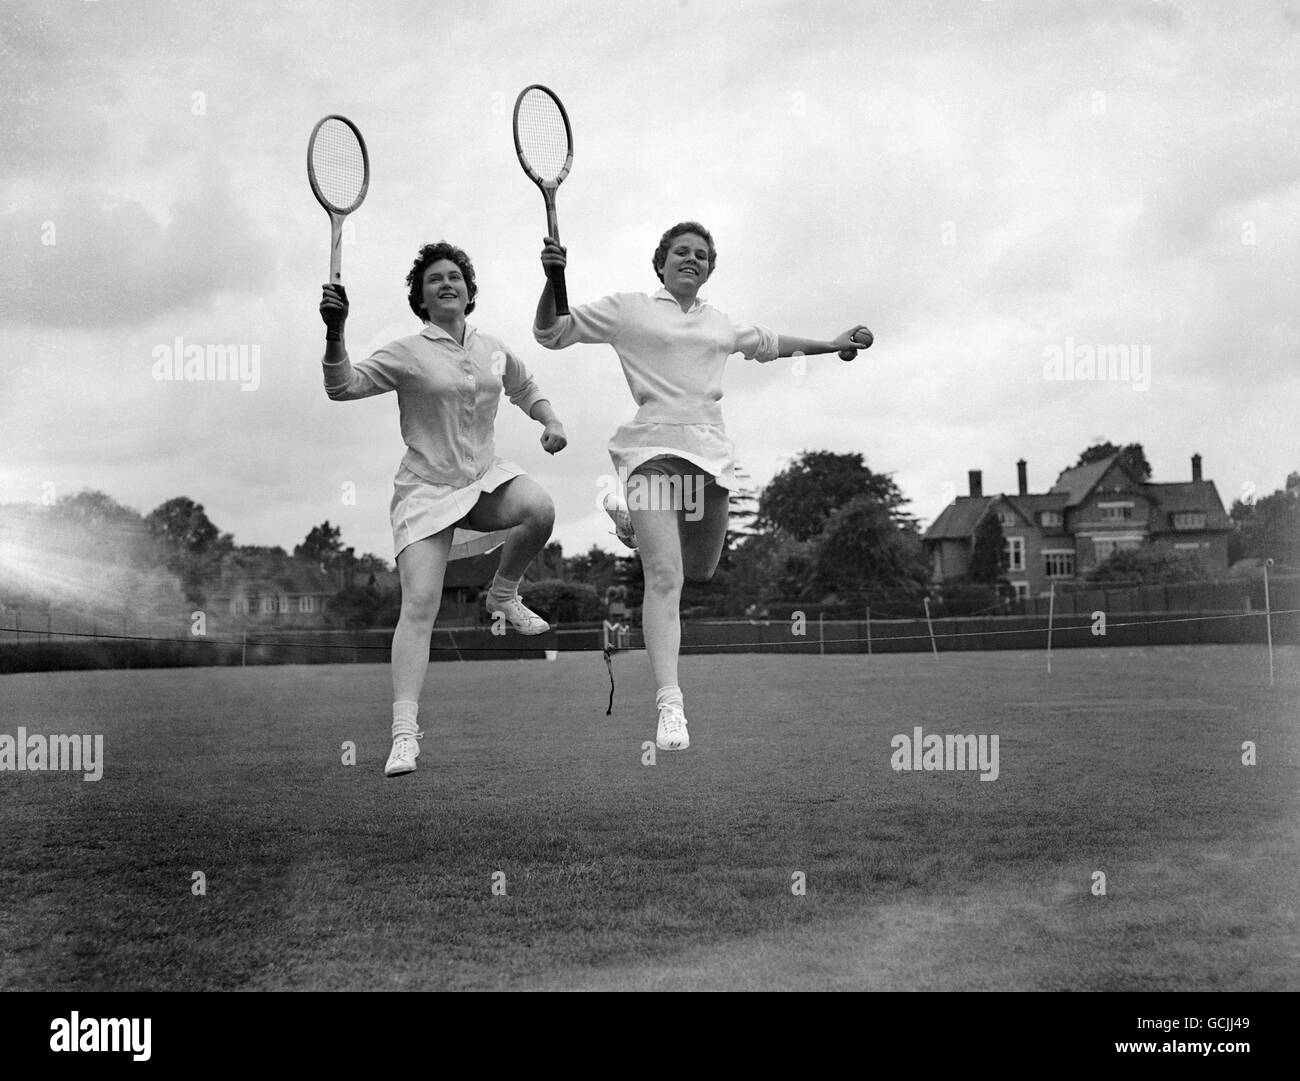 Tennis - Kent tous les championnats de comers - Beckenham.De gauche à droite : Mlle Wennerholm et Mlle L Engdahl de Suède Banque D'Images